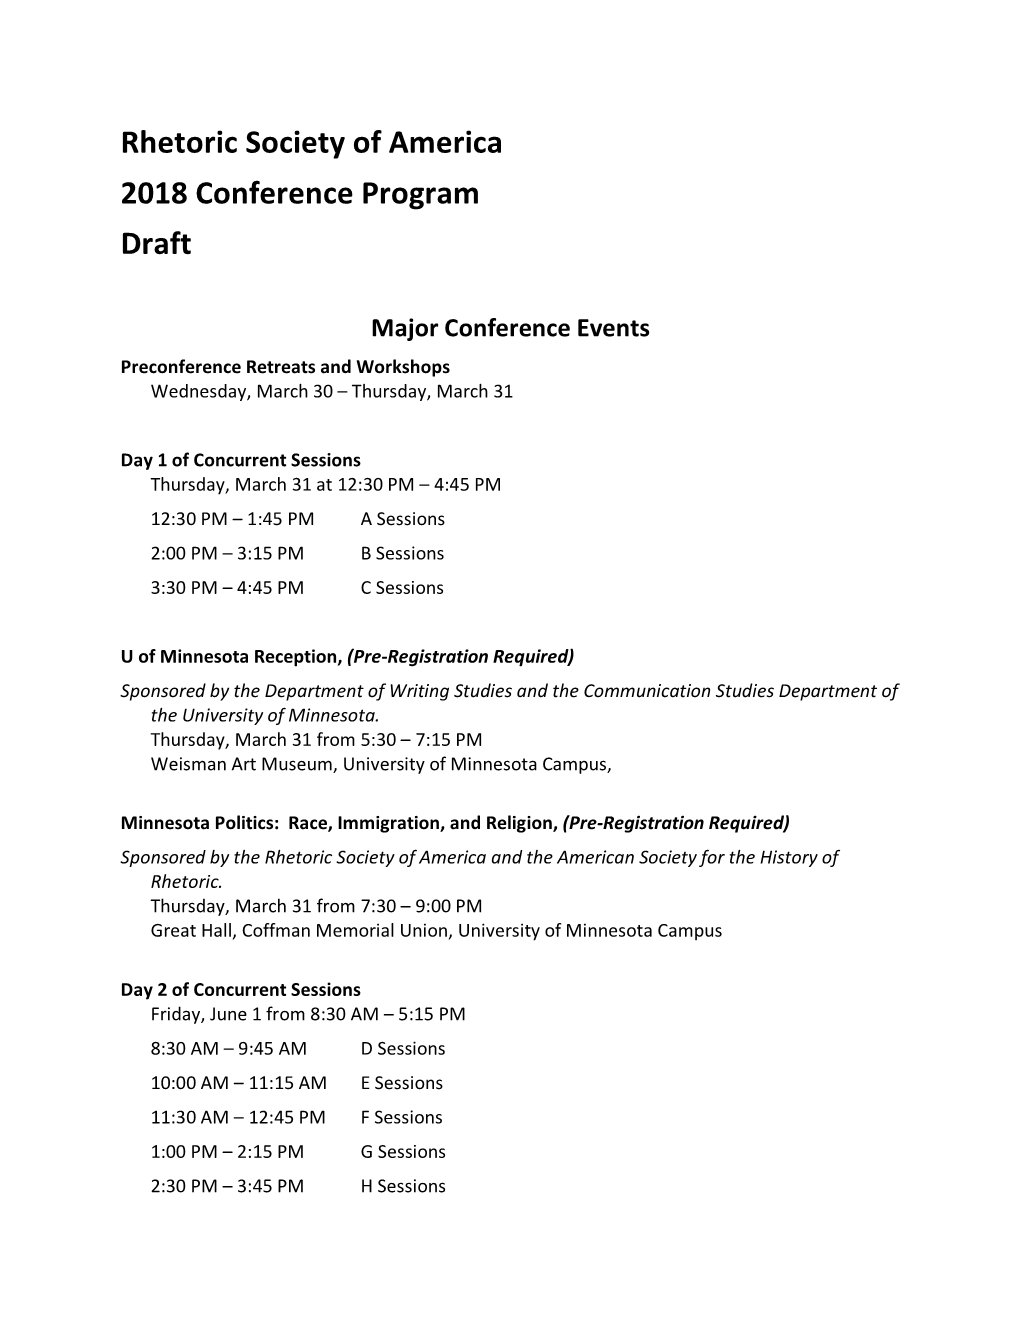 Rhetoric Society of America 2018 Conference Program Draft